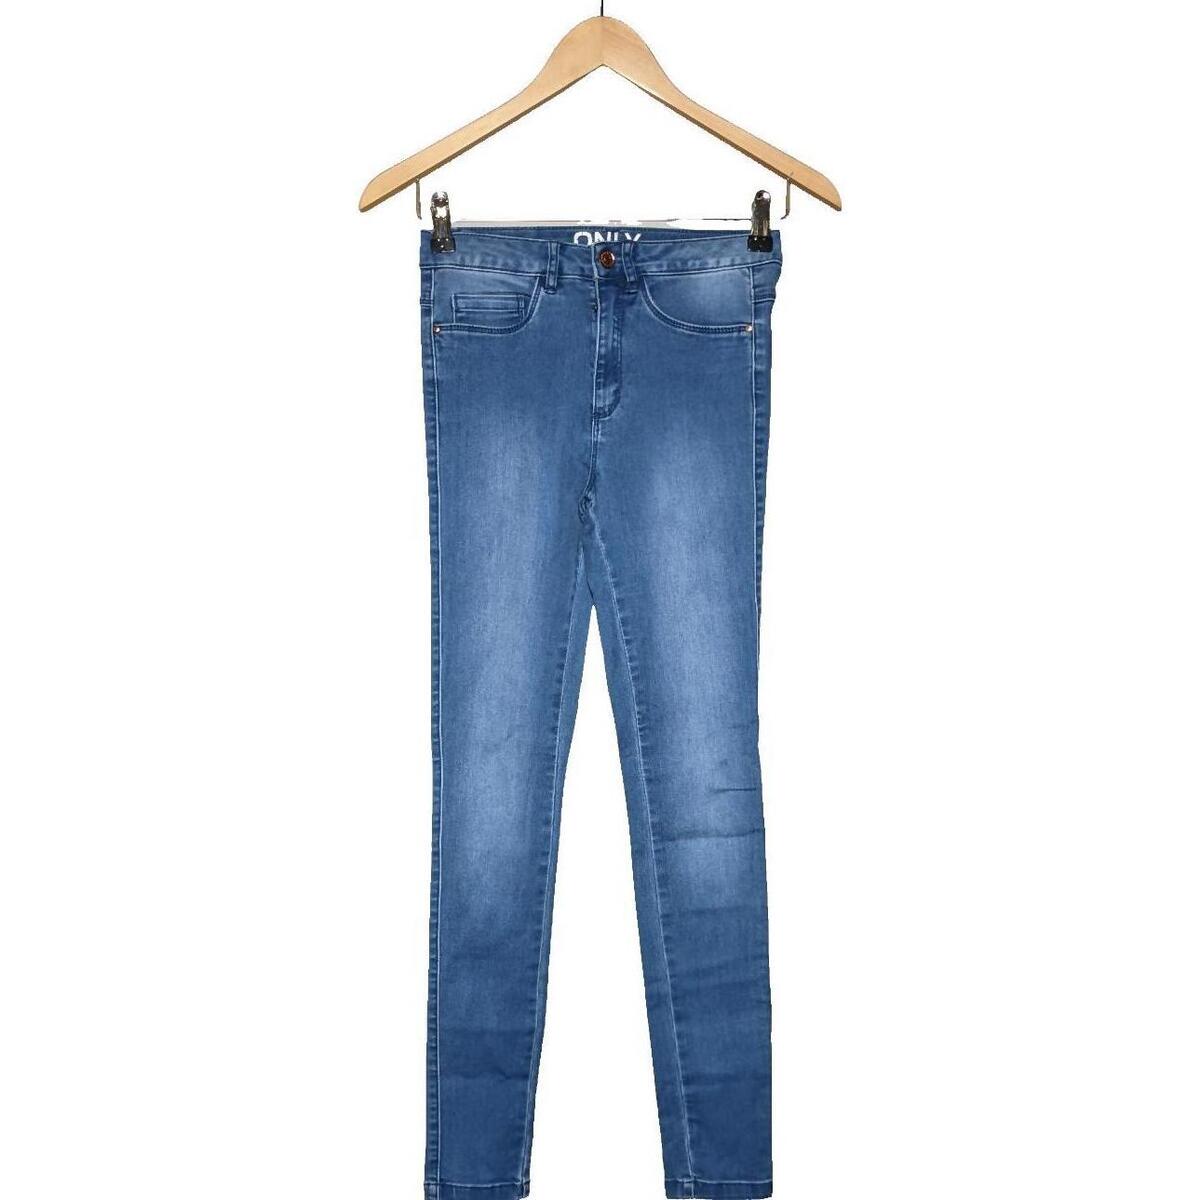 Vêtements Femme Jeans Only jean slim femme  34 - T0 - XS Bleu Bleu